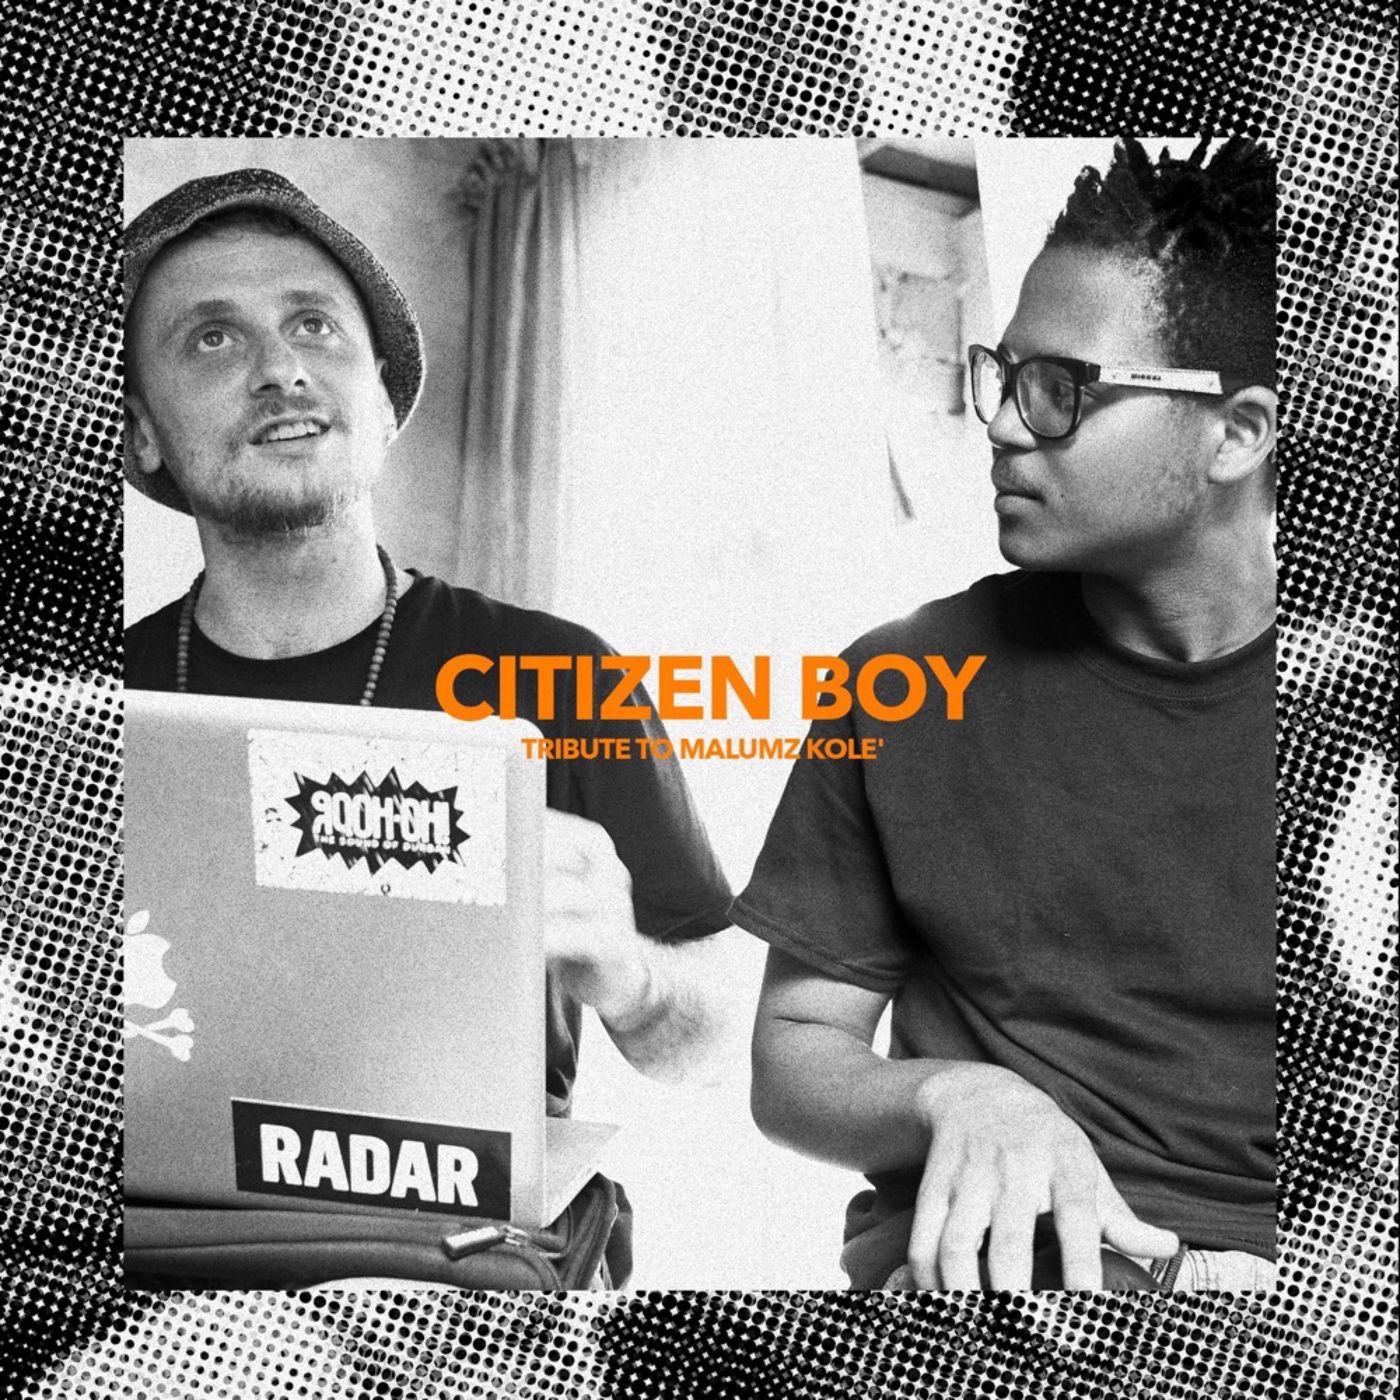 Citizen Boy - Tribute To Malumz Kolè / Citizen Boy Records